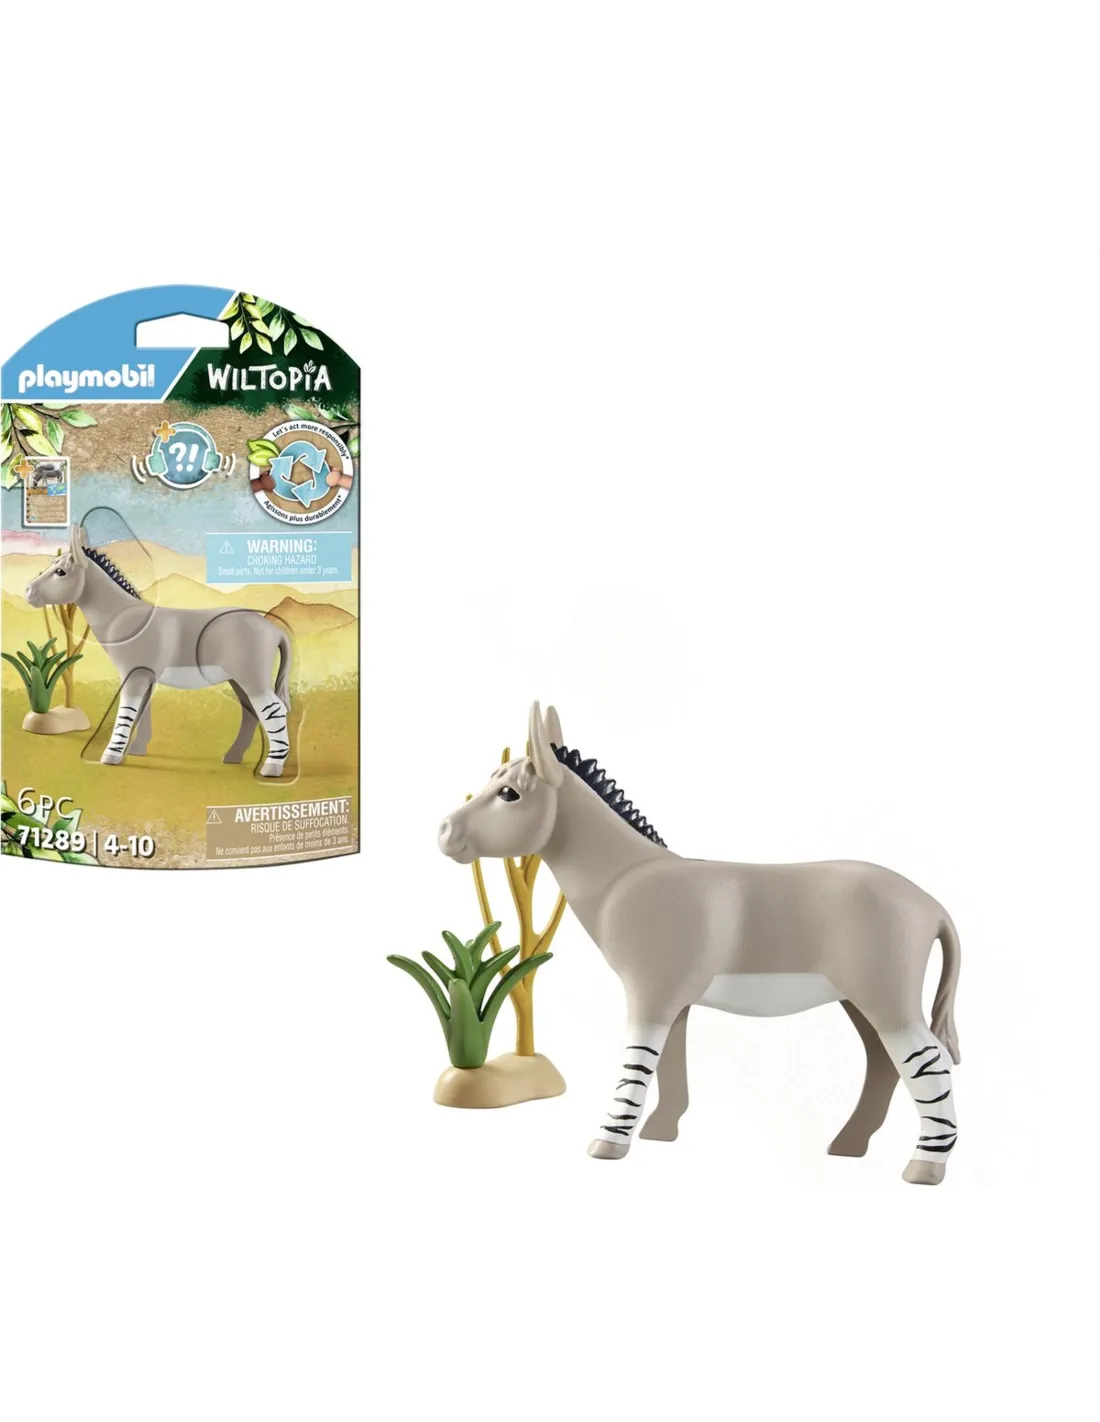 Playmobil Wiltopia Afrikaanse wilde ezel